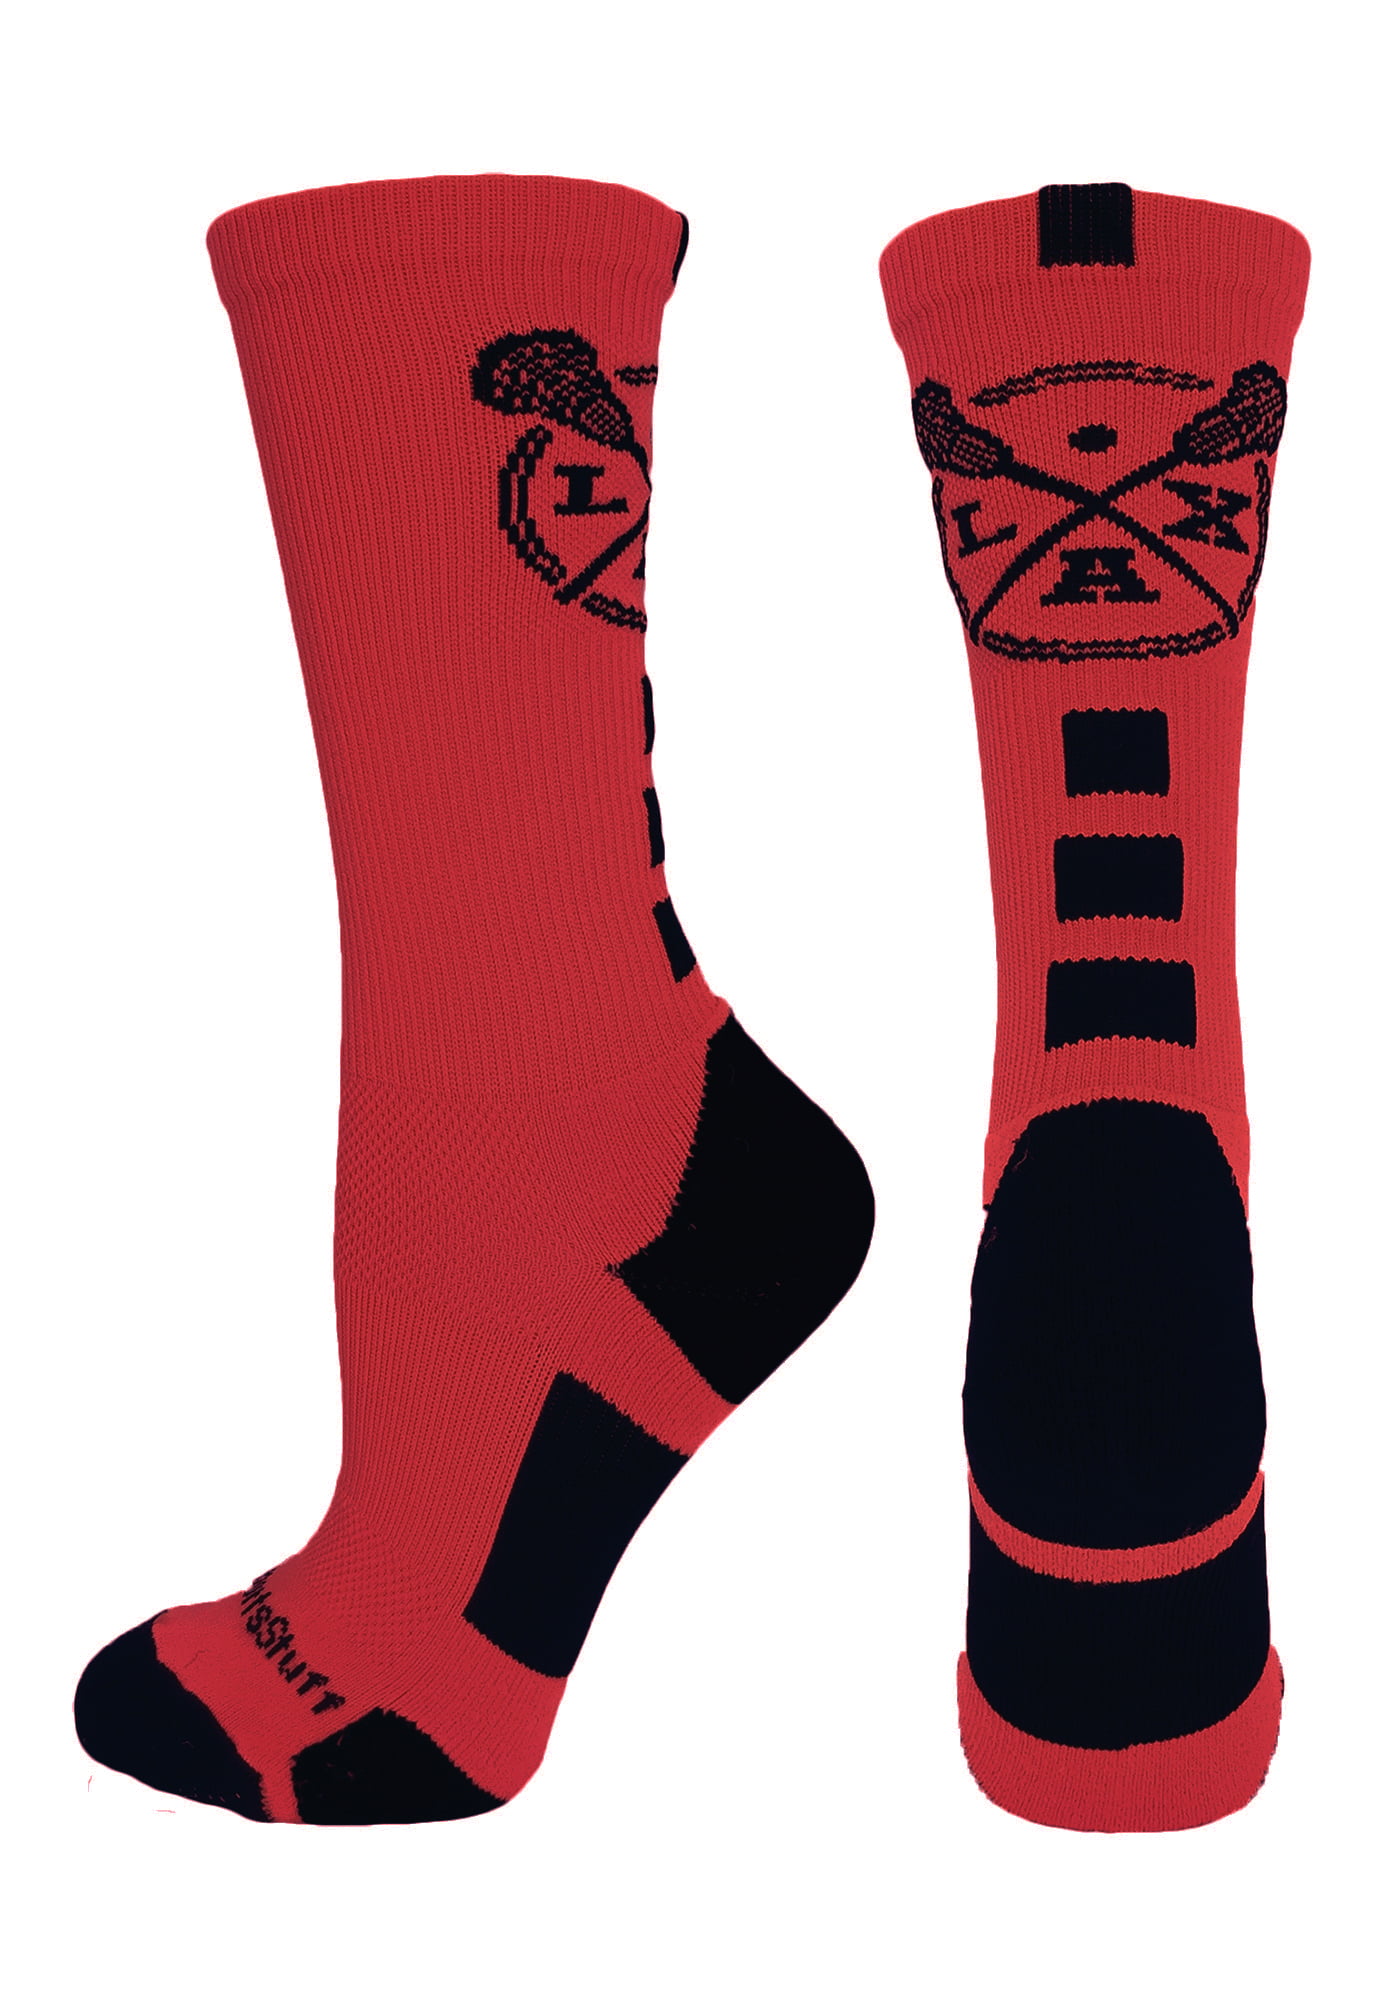 MadSportsStuff LAX Lacrosse Socks with Lacrosse Sticks Athletic Crew Socks Multiple Colors 